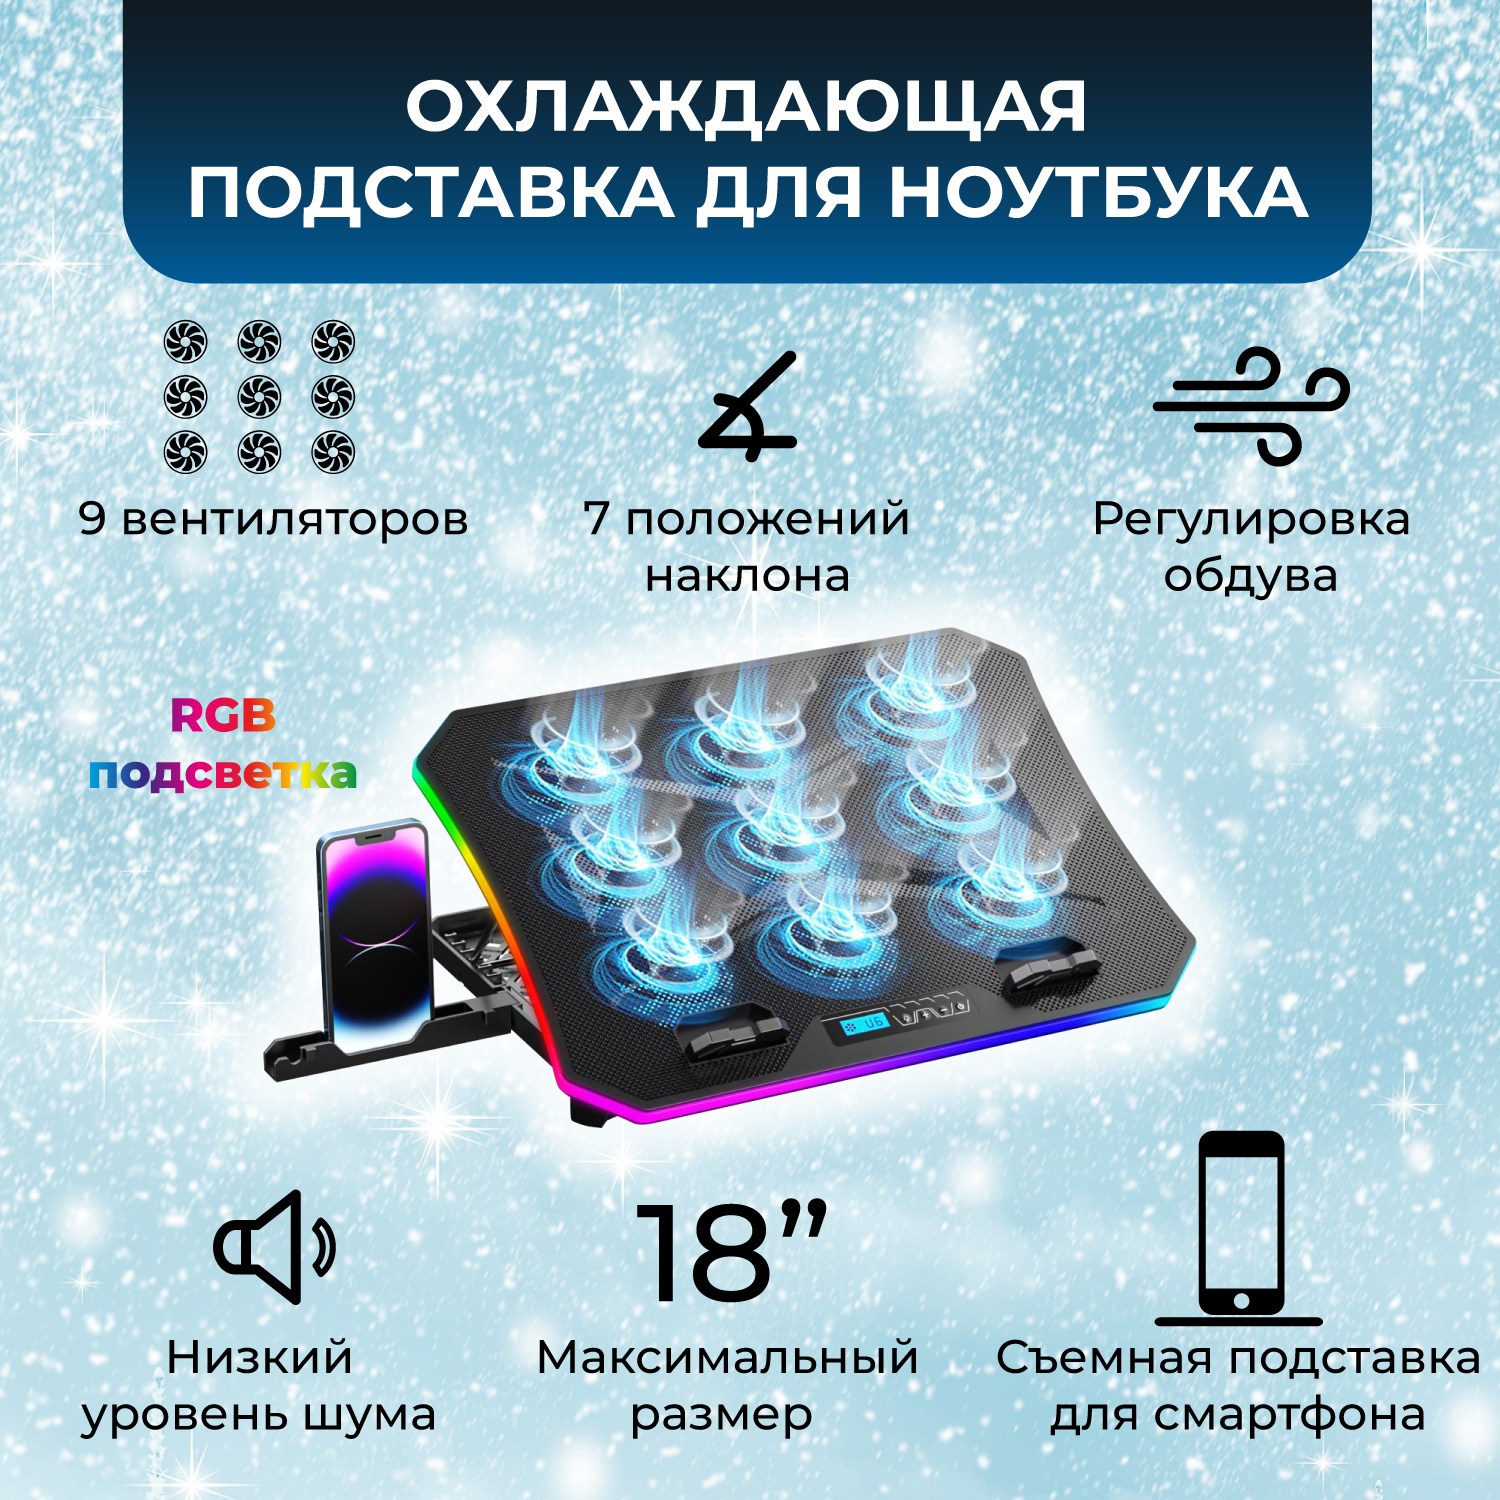 Охлаждающая подставка для ноутбука 9 вентиляторов RGB KS-512-9, купить в Москве, цены в интернет-магазинах на Мегамаркет